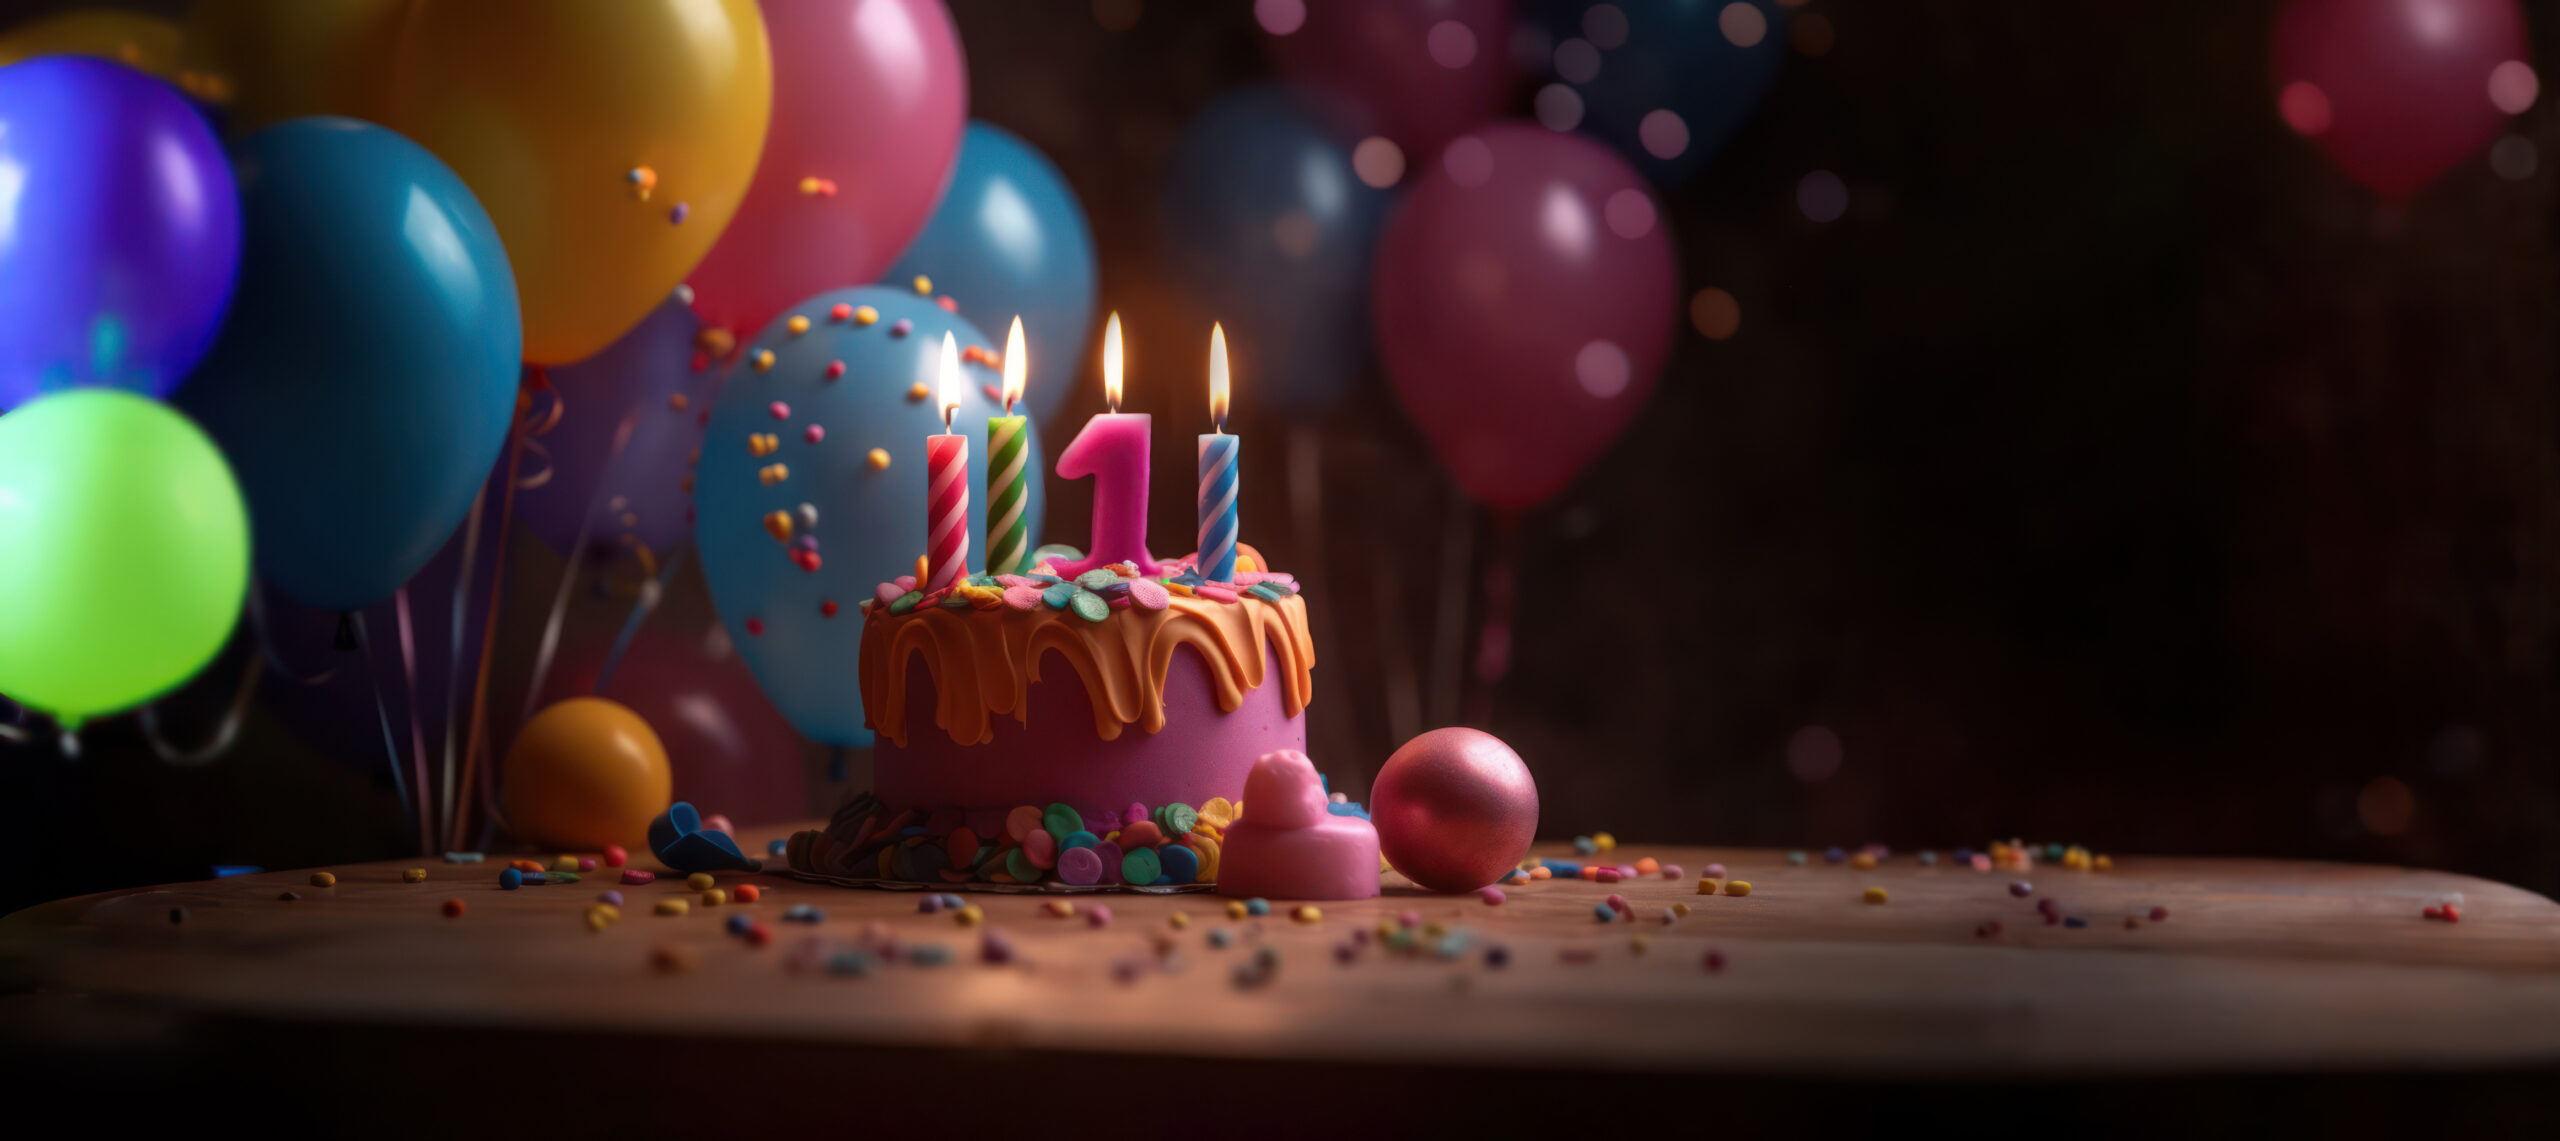 Luftballons und Geburtstagskuchen mit einer Kerze in Form der Zahl Eins.